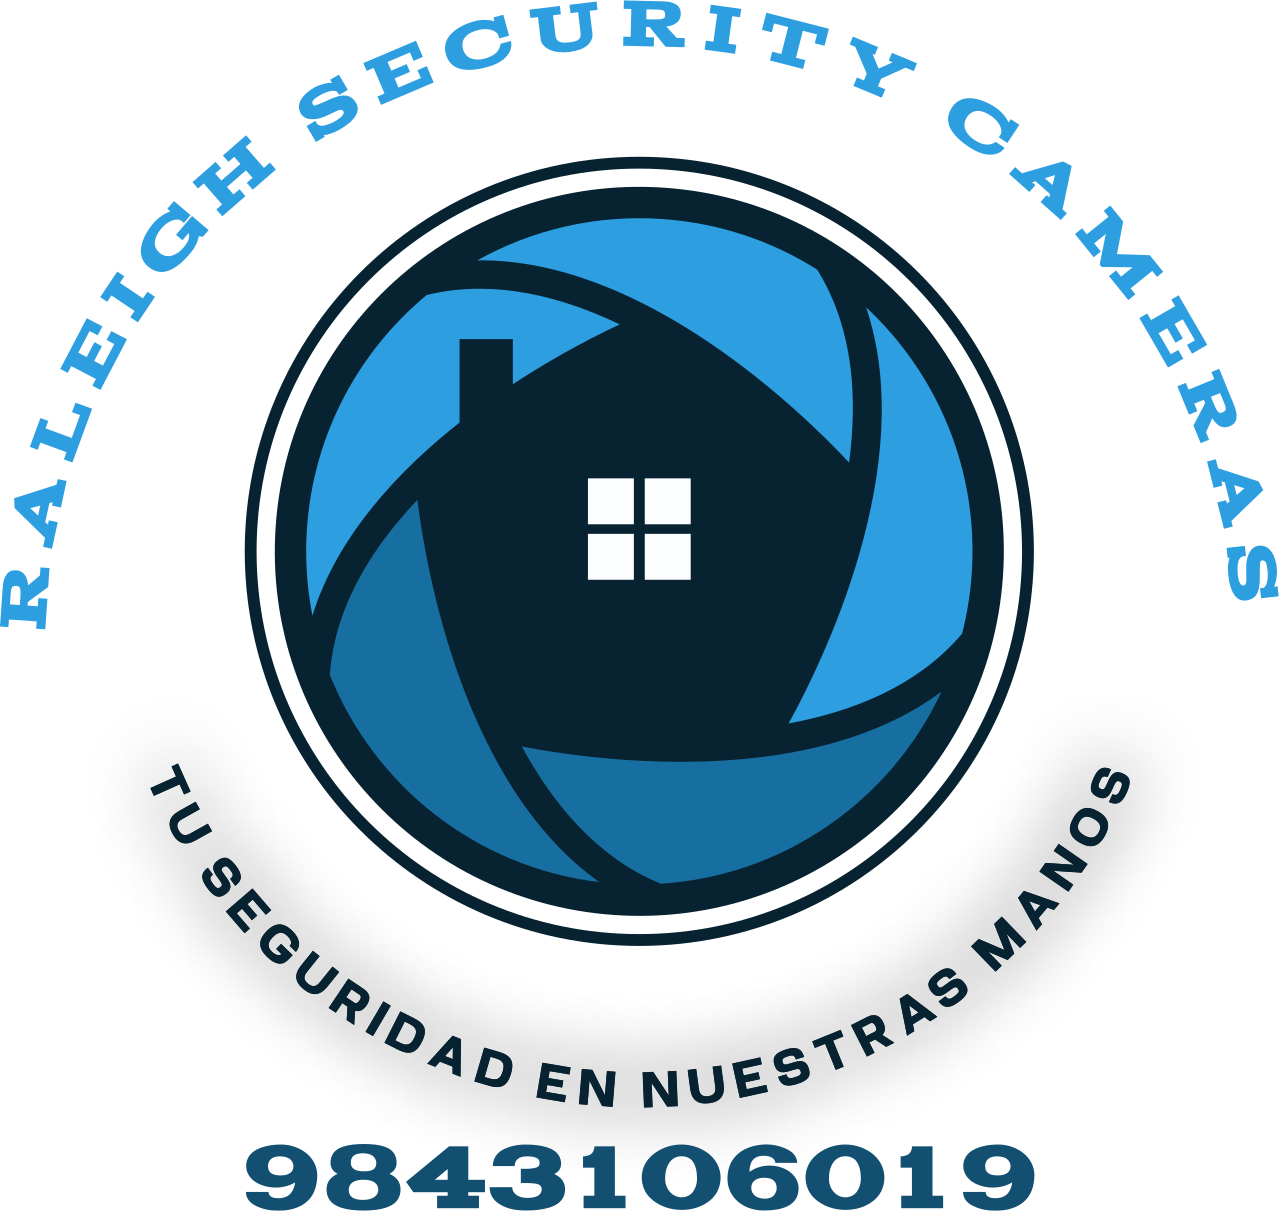 Raleigh Security Cameras 's logo